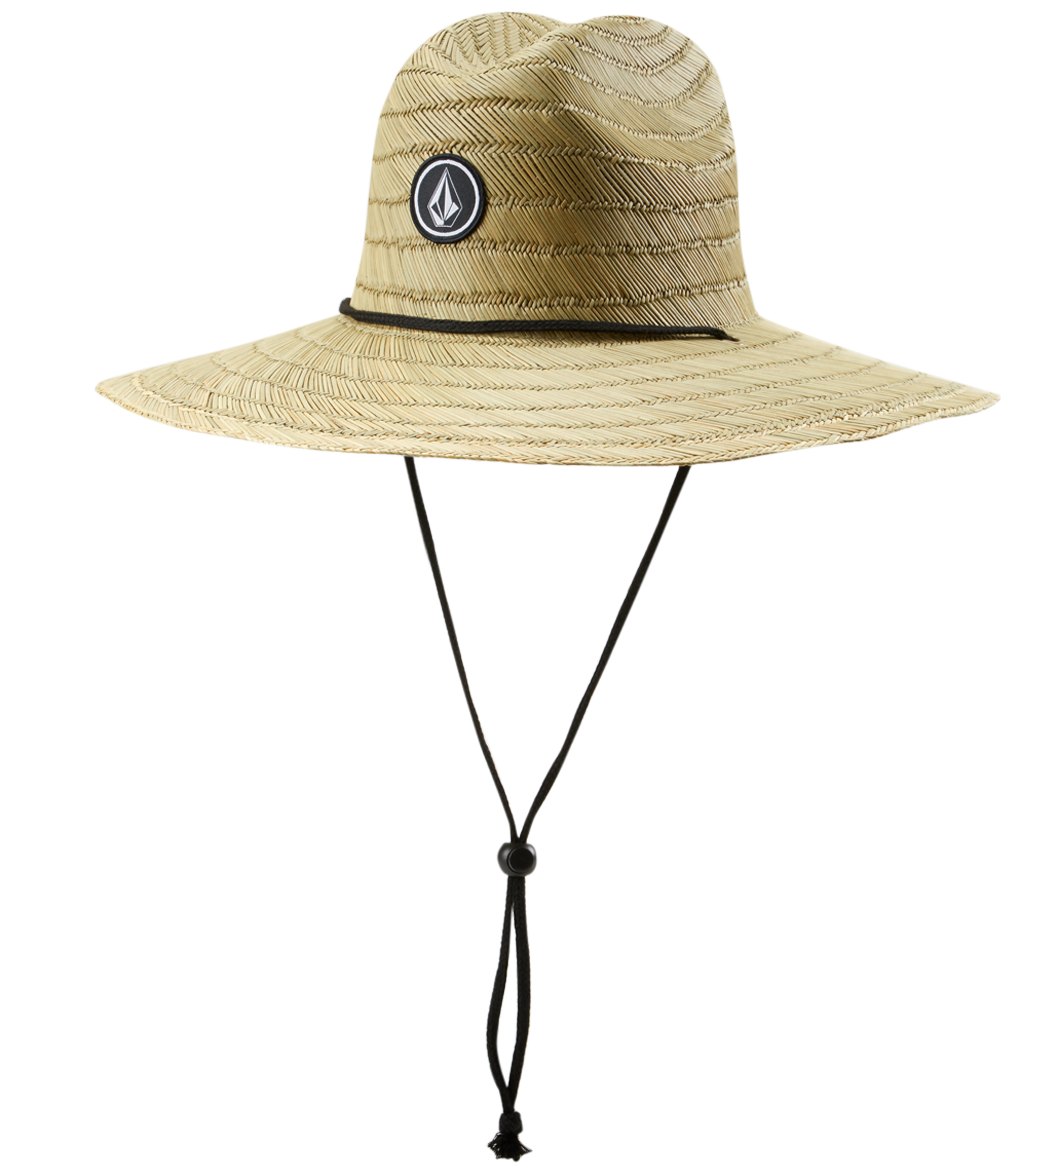 Volcom Quarter Straw Lifeguard Hat - Natural - Swimoutlet.com